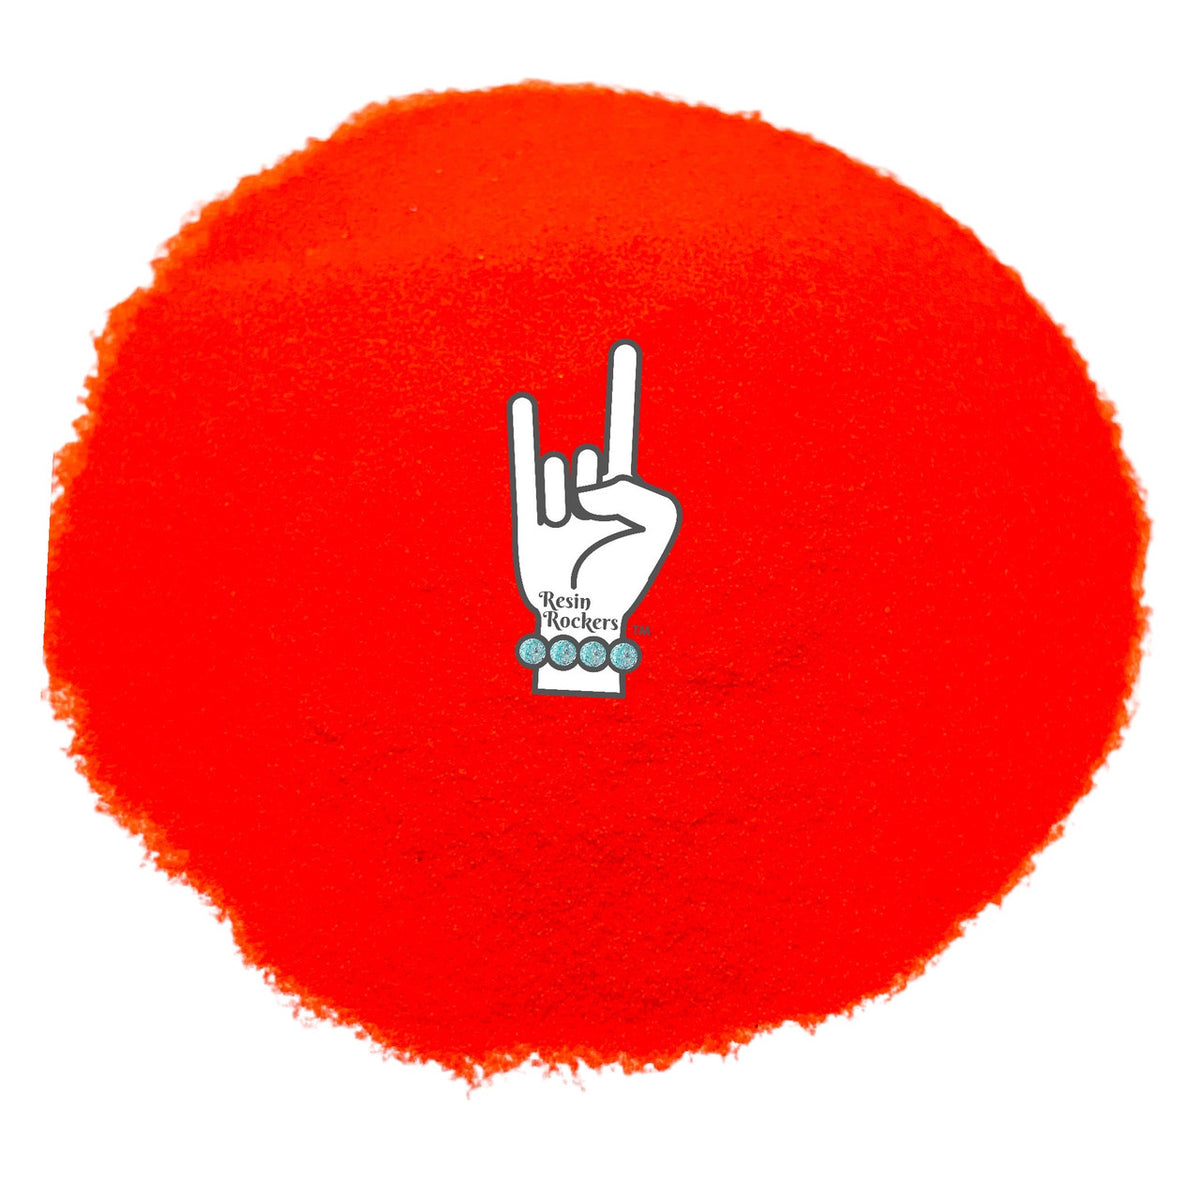 Electric Love Red Orange Fluorescent Pixie for Poxy Micro Fine Glitter